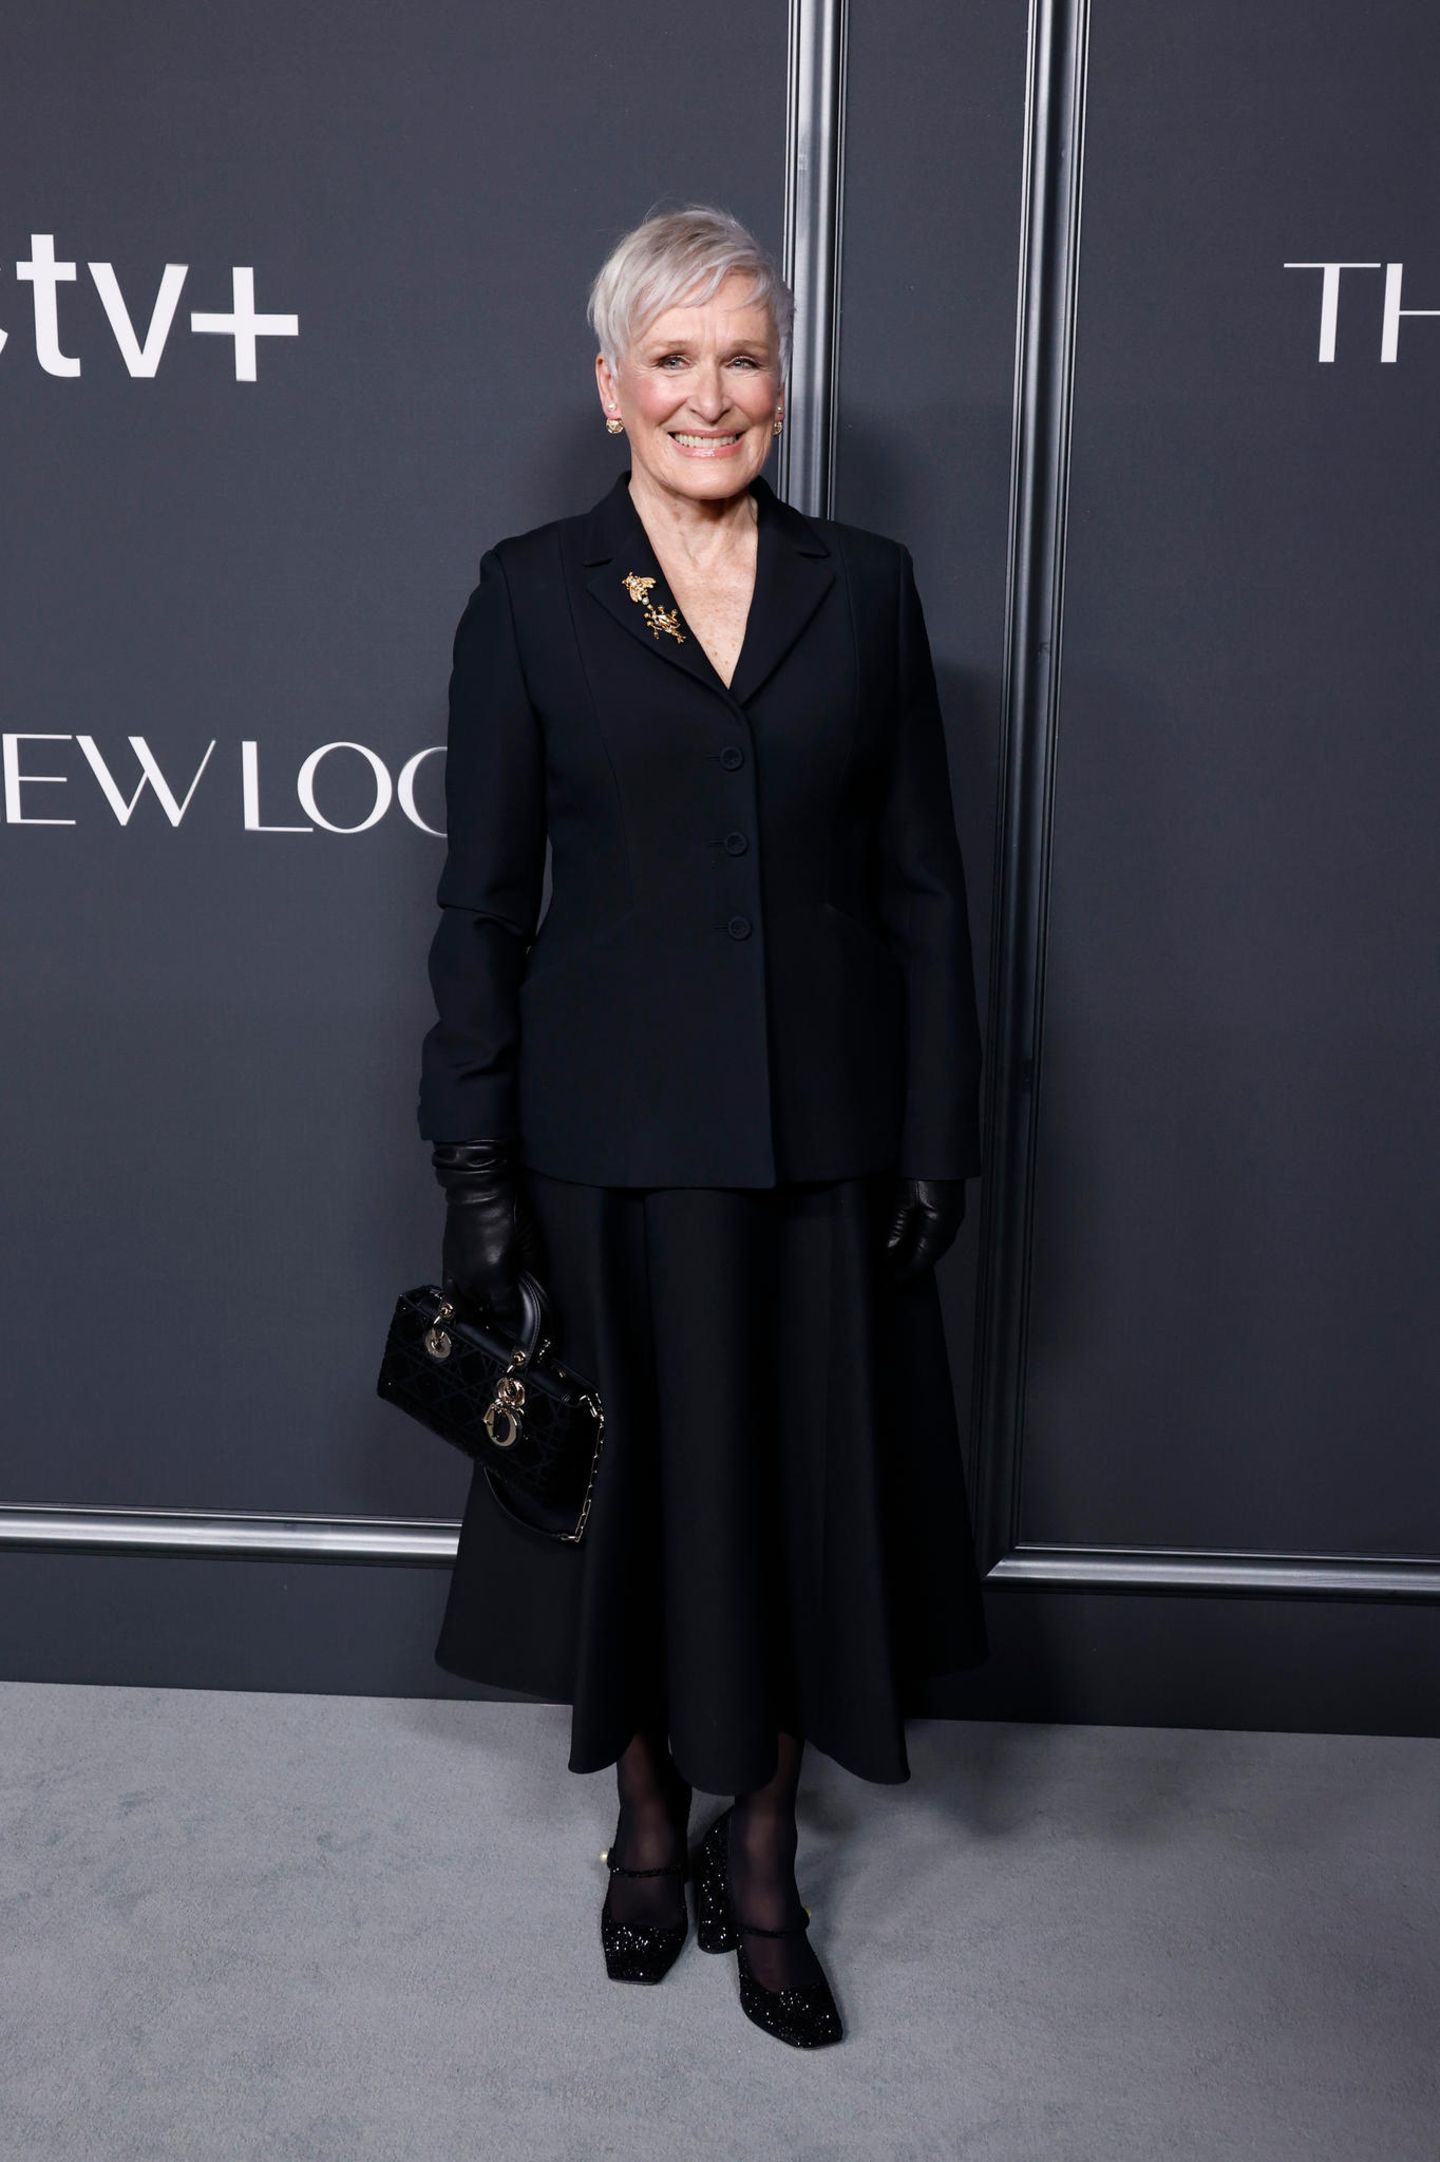 Auch zwischen den großen Award-Shows ist auf den Red Carpets einiges los. Glenn Close besucht kürzlich die Premiere von "The New Look" in Los Angeles und sorgt mit ihrem dunklen Look auf dem düsteren Teppich für eine ordentliche Portion Dark-Glamour.